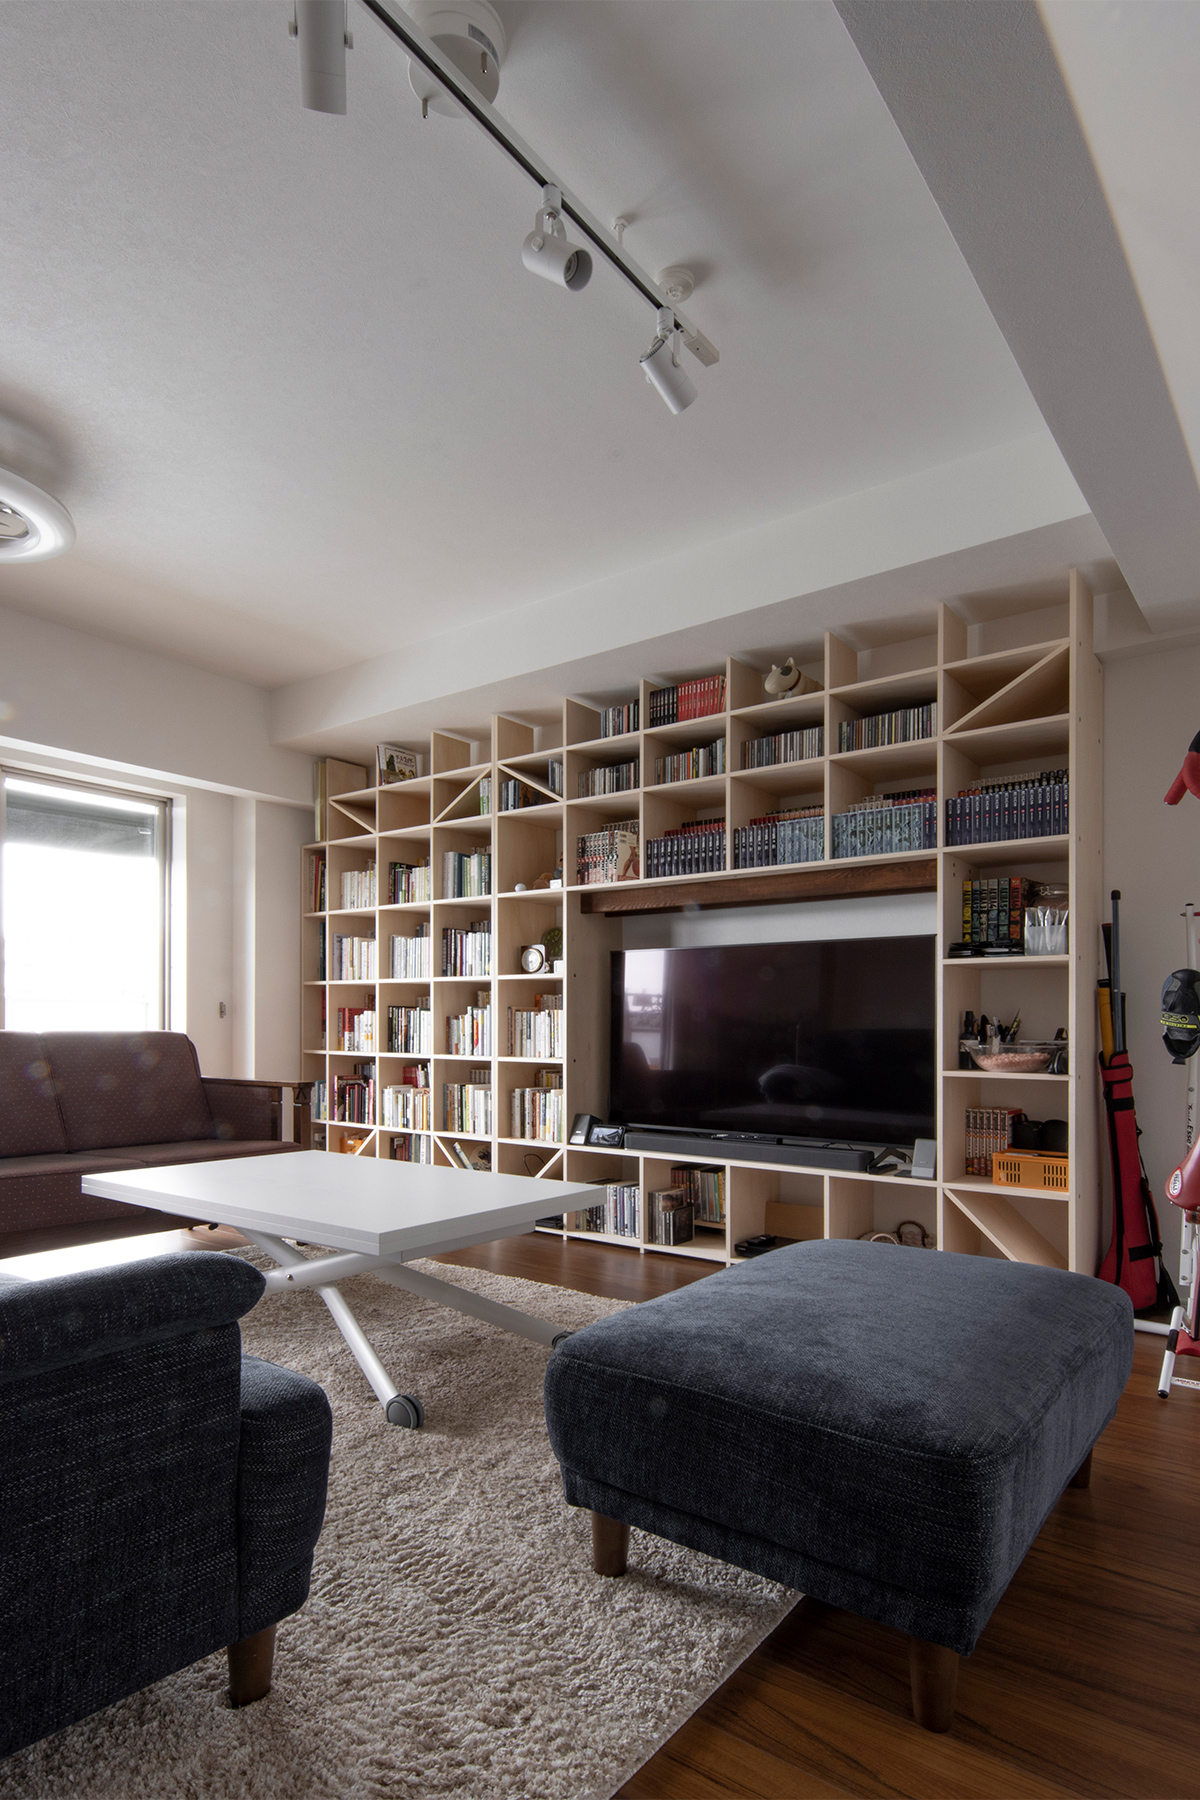 賃貸での壁面収納事例⑦ 壁一面の壁面収納をテレビボードとして利用